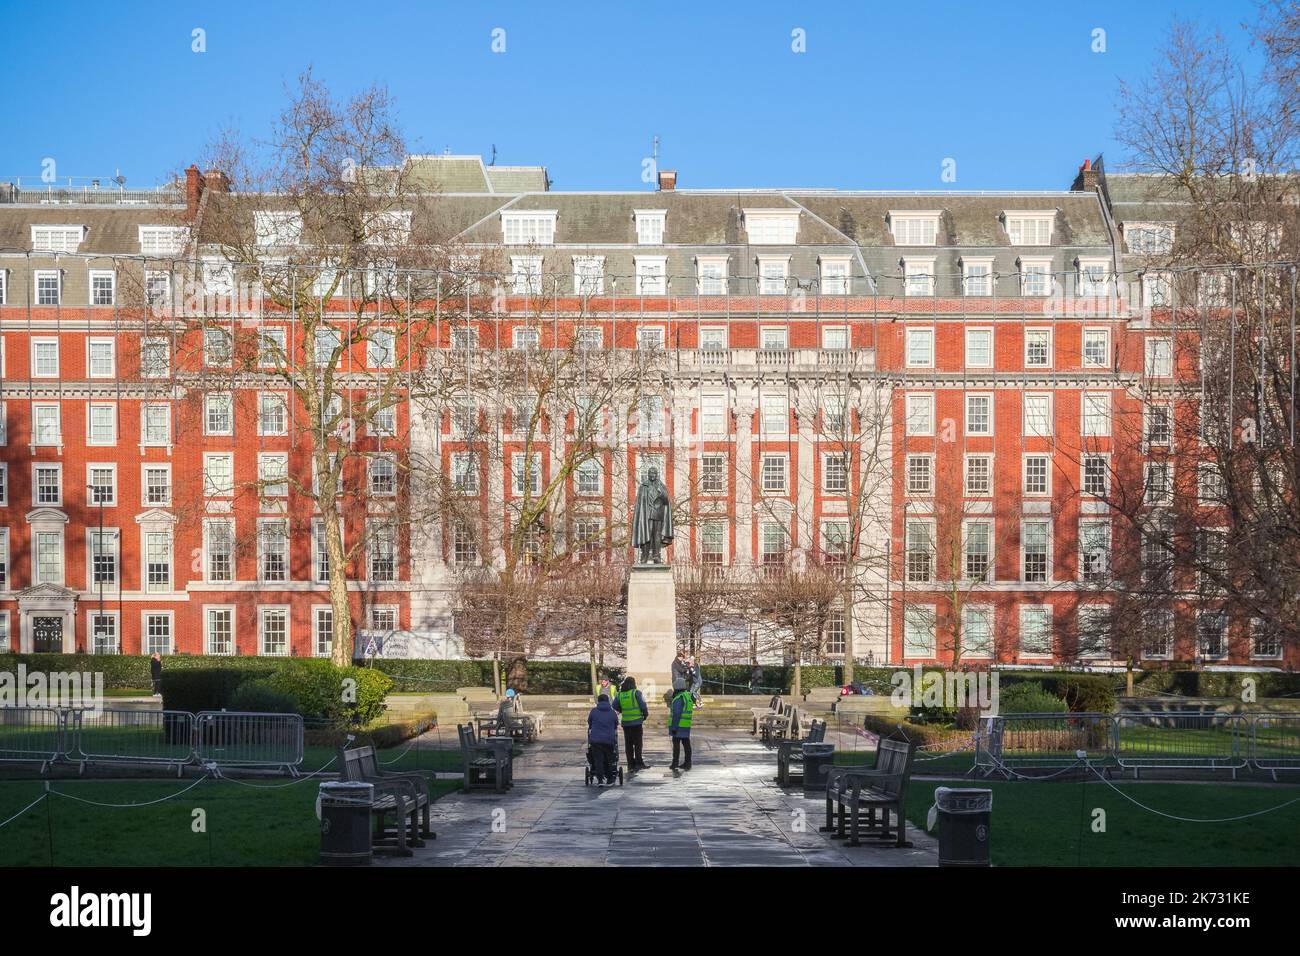 Londres, Royaume-Uni - 04 décembre 2021 - Grosvenor Square, une grande place de jardin dans le quartier Mayfair de Londres Banque D'Images